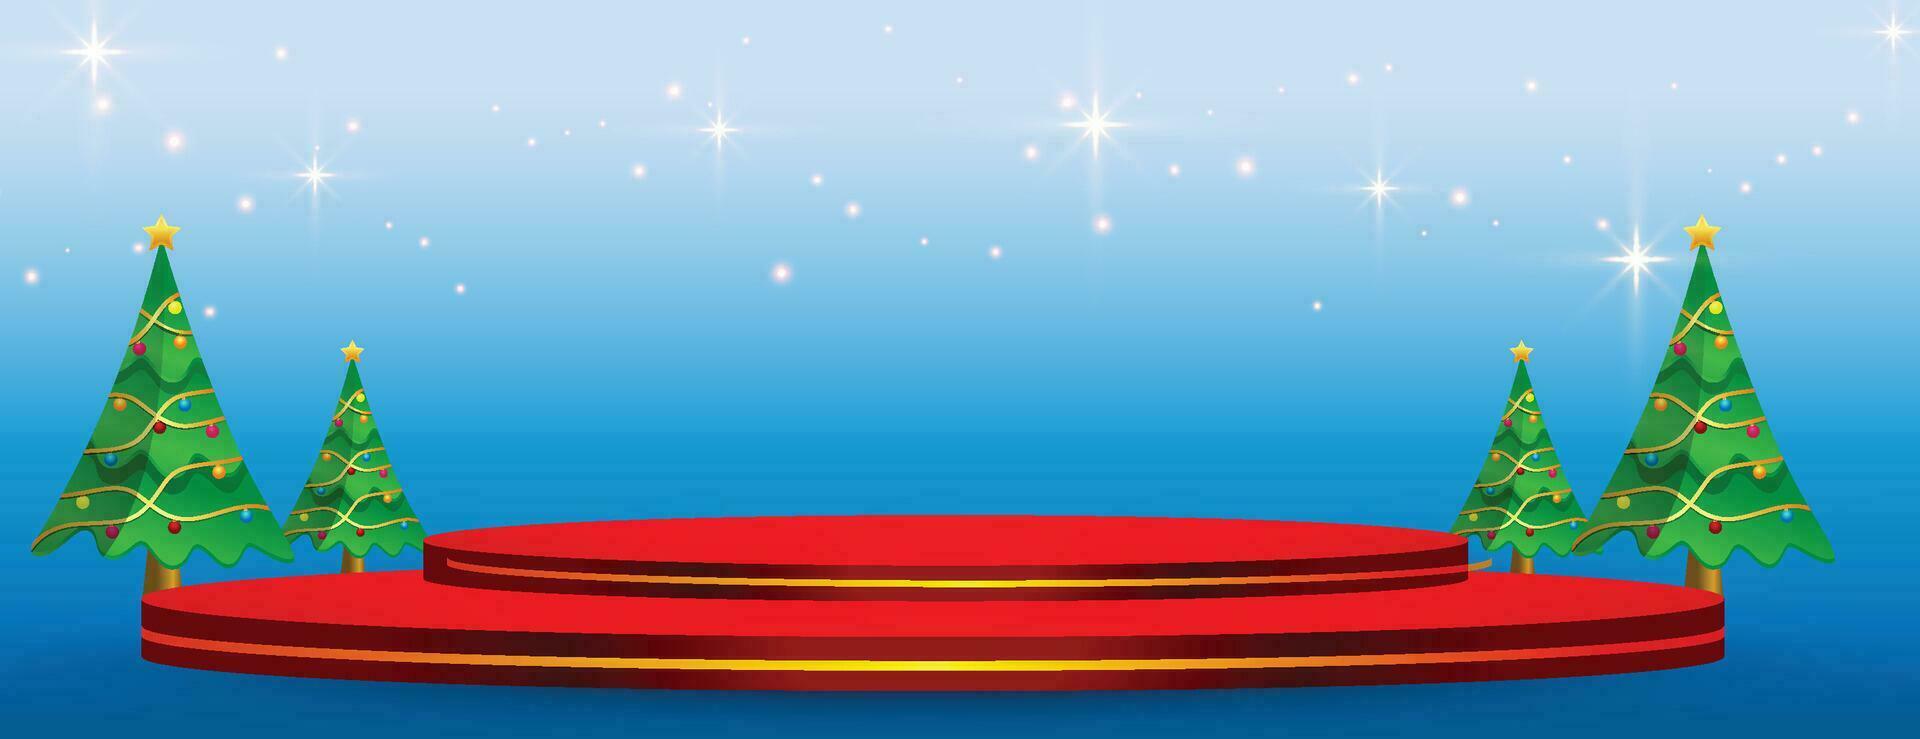 Frohe Weihnachten-Banner mit zylindrischer Form der Produktpräsentation und Weihnachtsbaum-Papierschnitt-Stil vektor